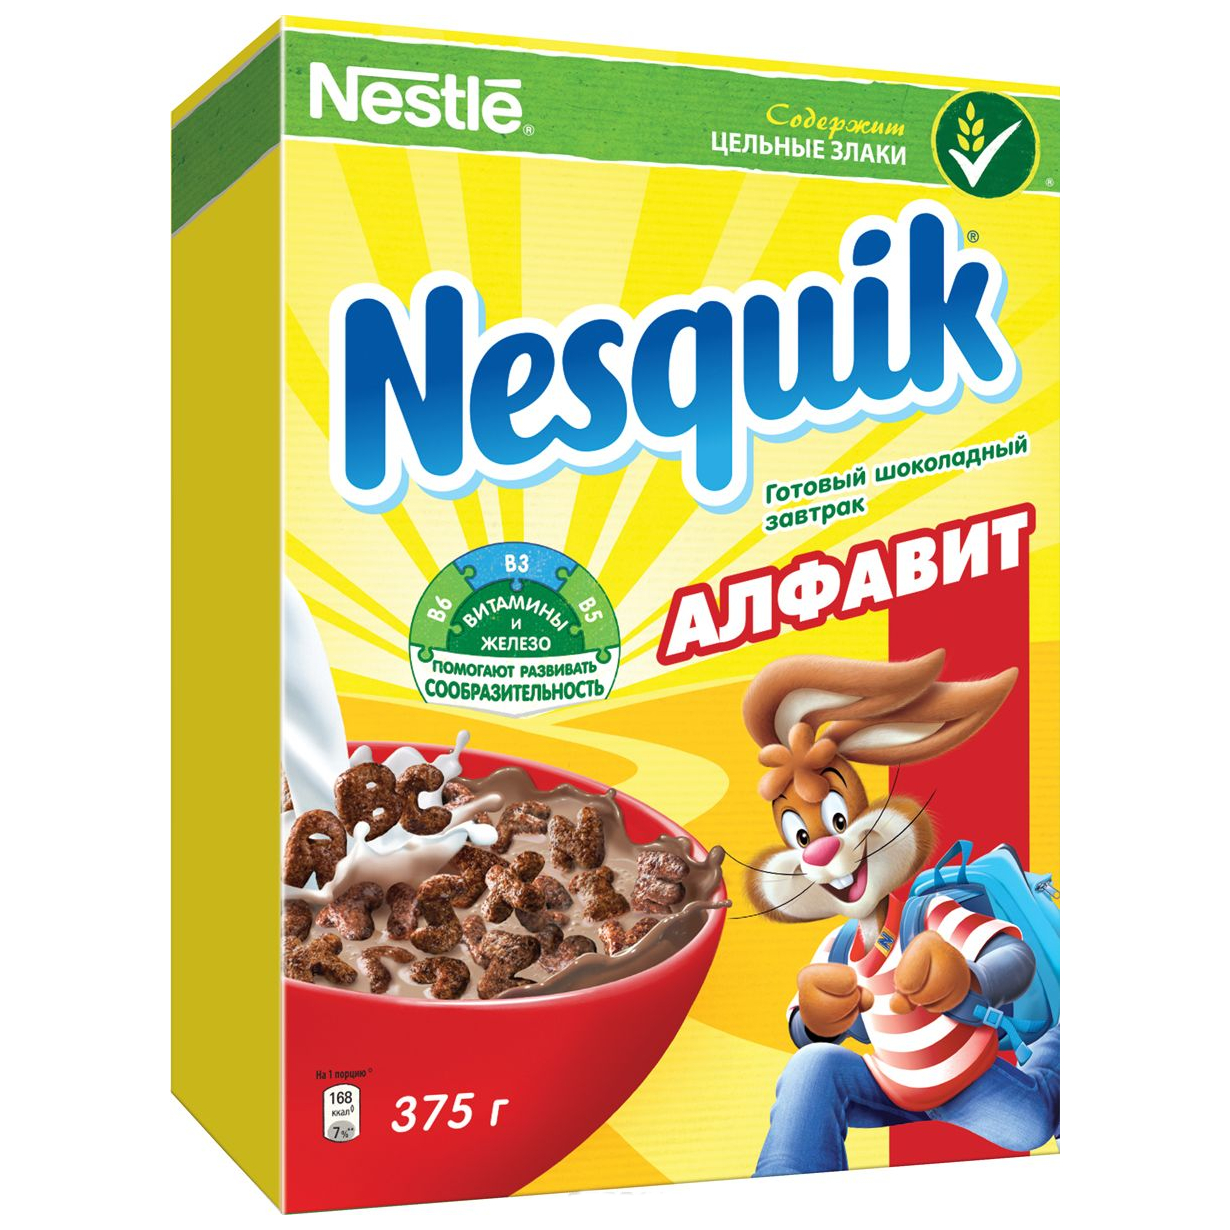 Готовый шоколадный завтрак Nesquik Алфавит - 375 г